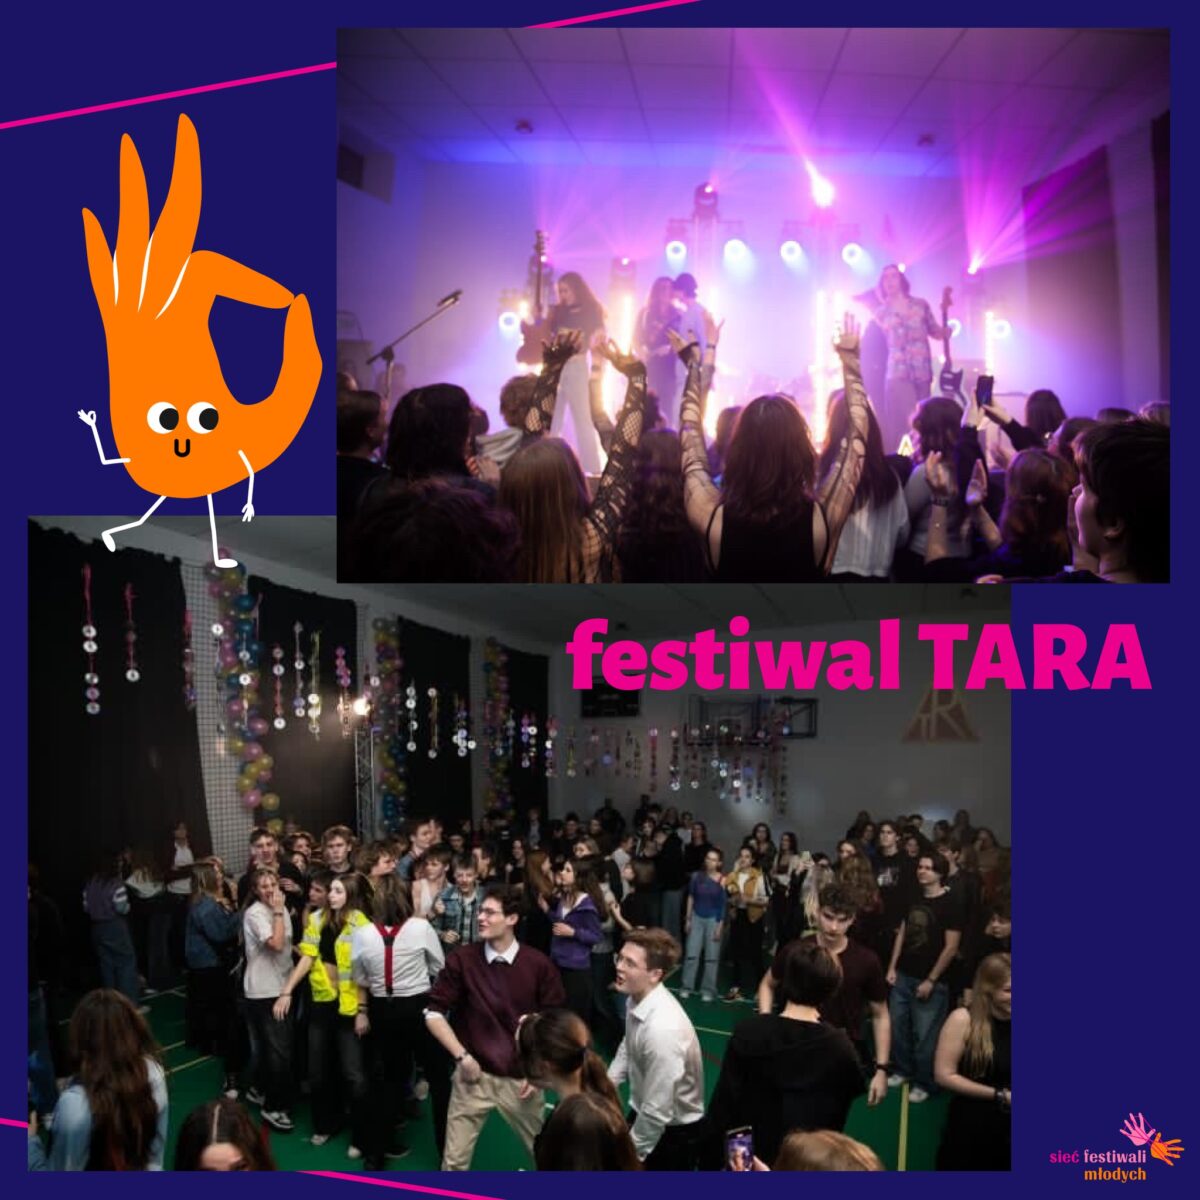 Kolaż dwóch zdjęć, na górnym zespół muzyczny na scenie, na dolnym grupa roześmianej młodzieży w pomieszczeniu. w połowie zdjęcia napis festiwal TARA